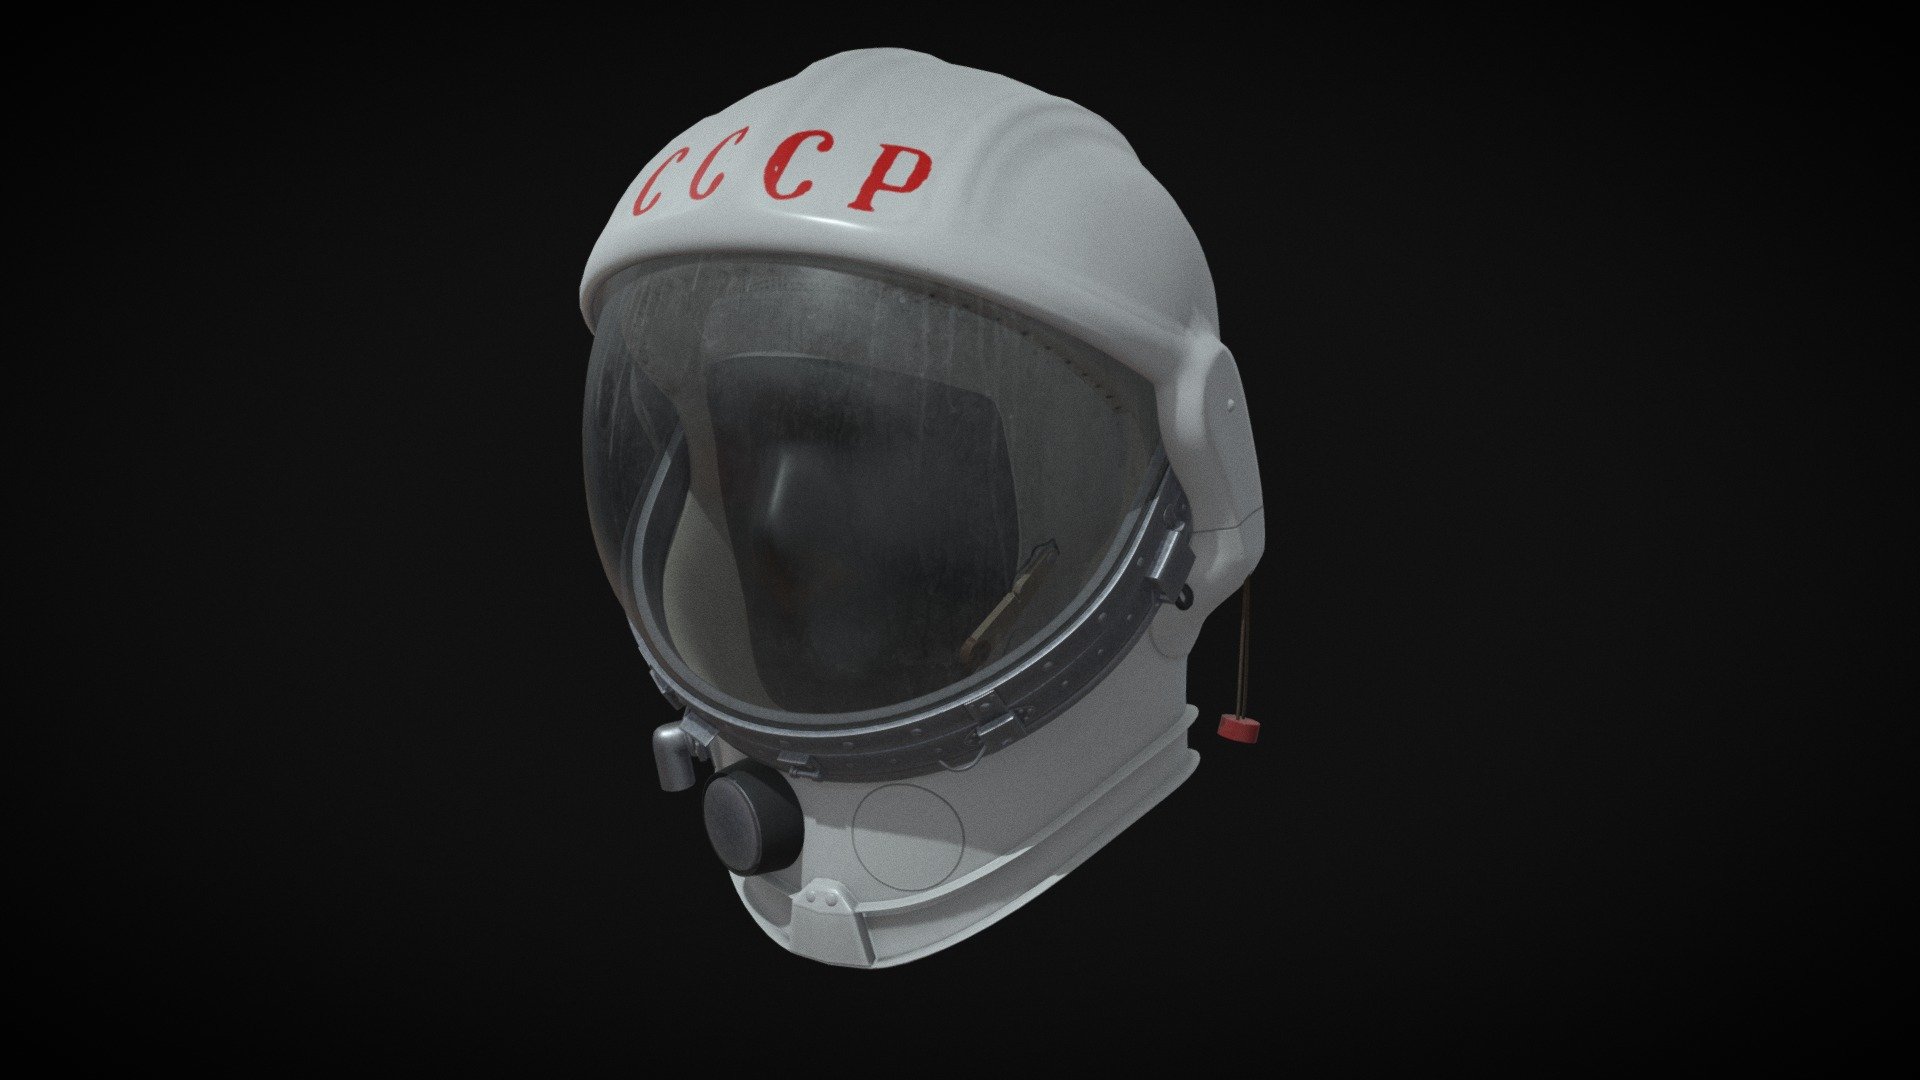 Soviet cosmonaut helmet